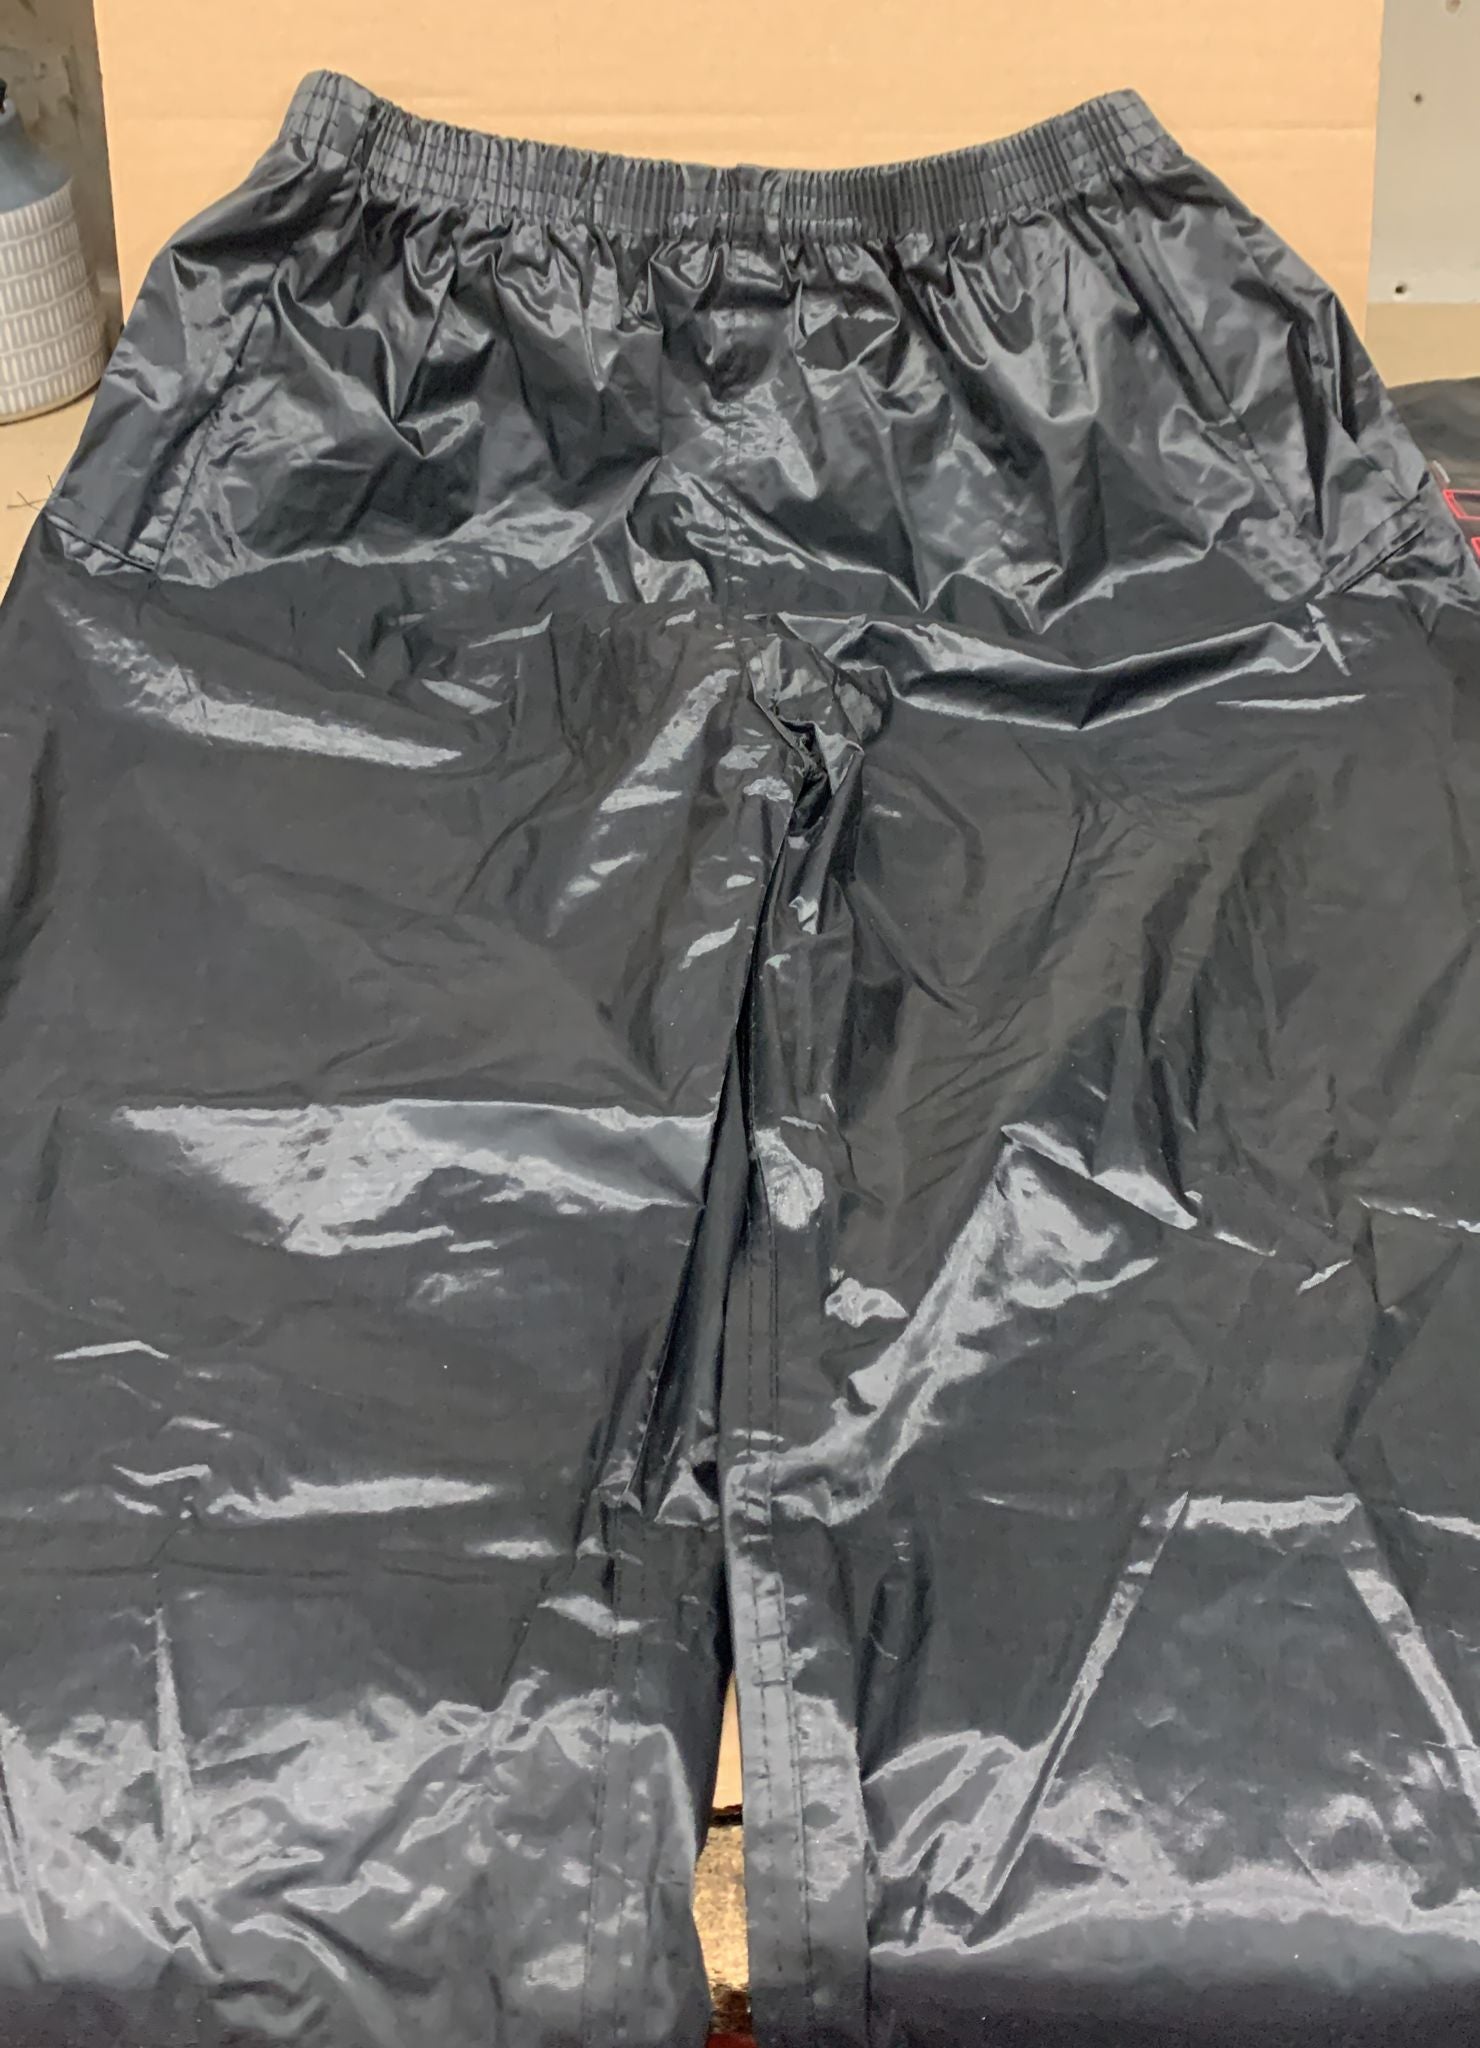 Blackrock Men's Black Cotswold Waterproof Trousers-Medium- W 80-110  L 182-188- B  2877